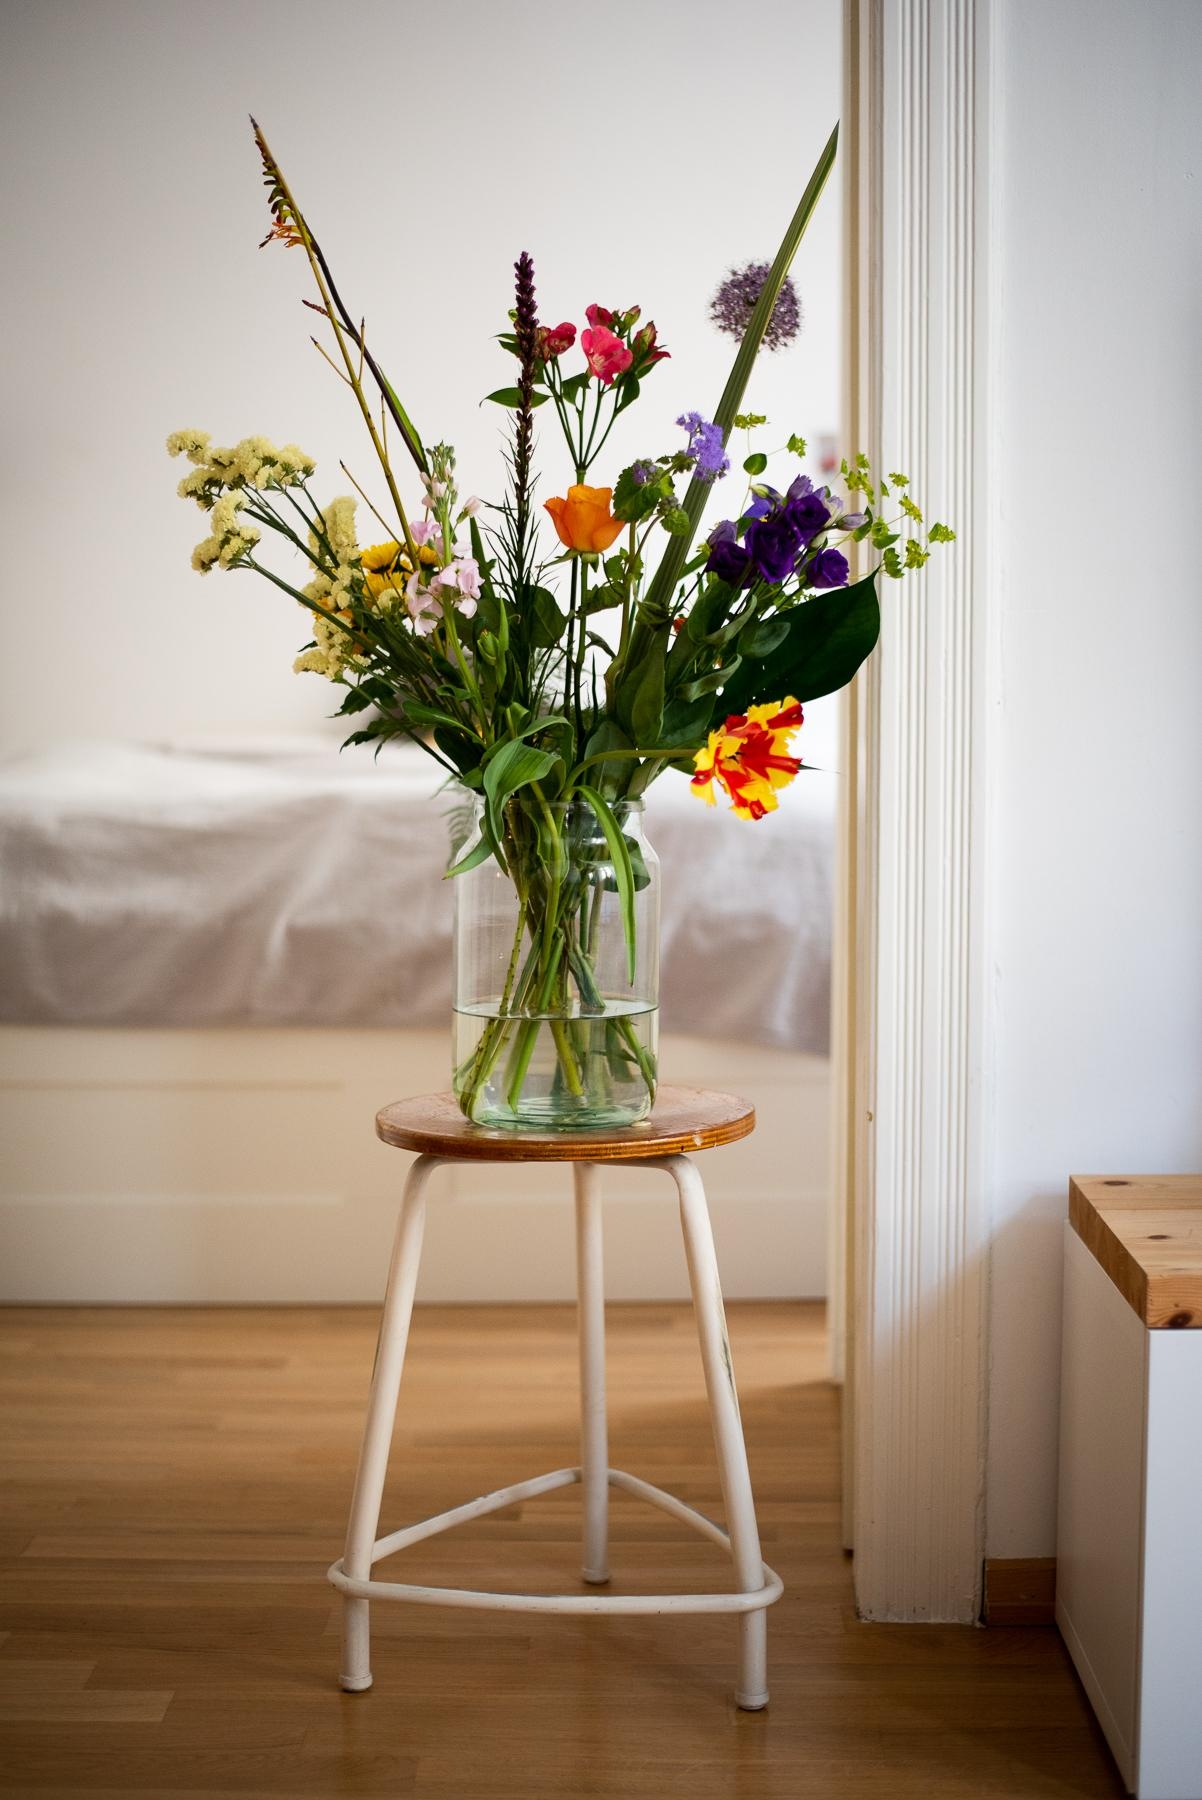 Einen wunderschönen Mittwoch! #freshflowers #flowers #interior #vintage #interiorinspo 